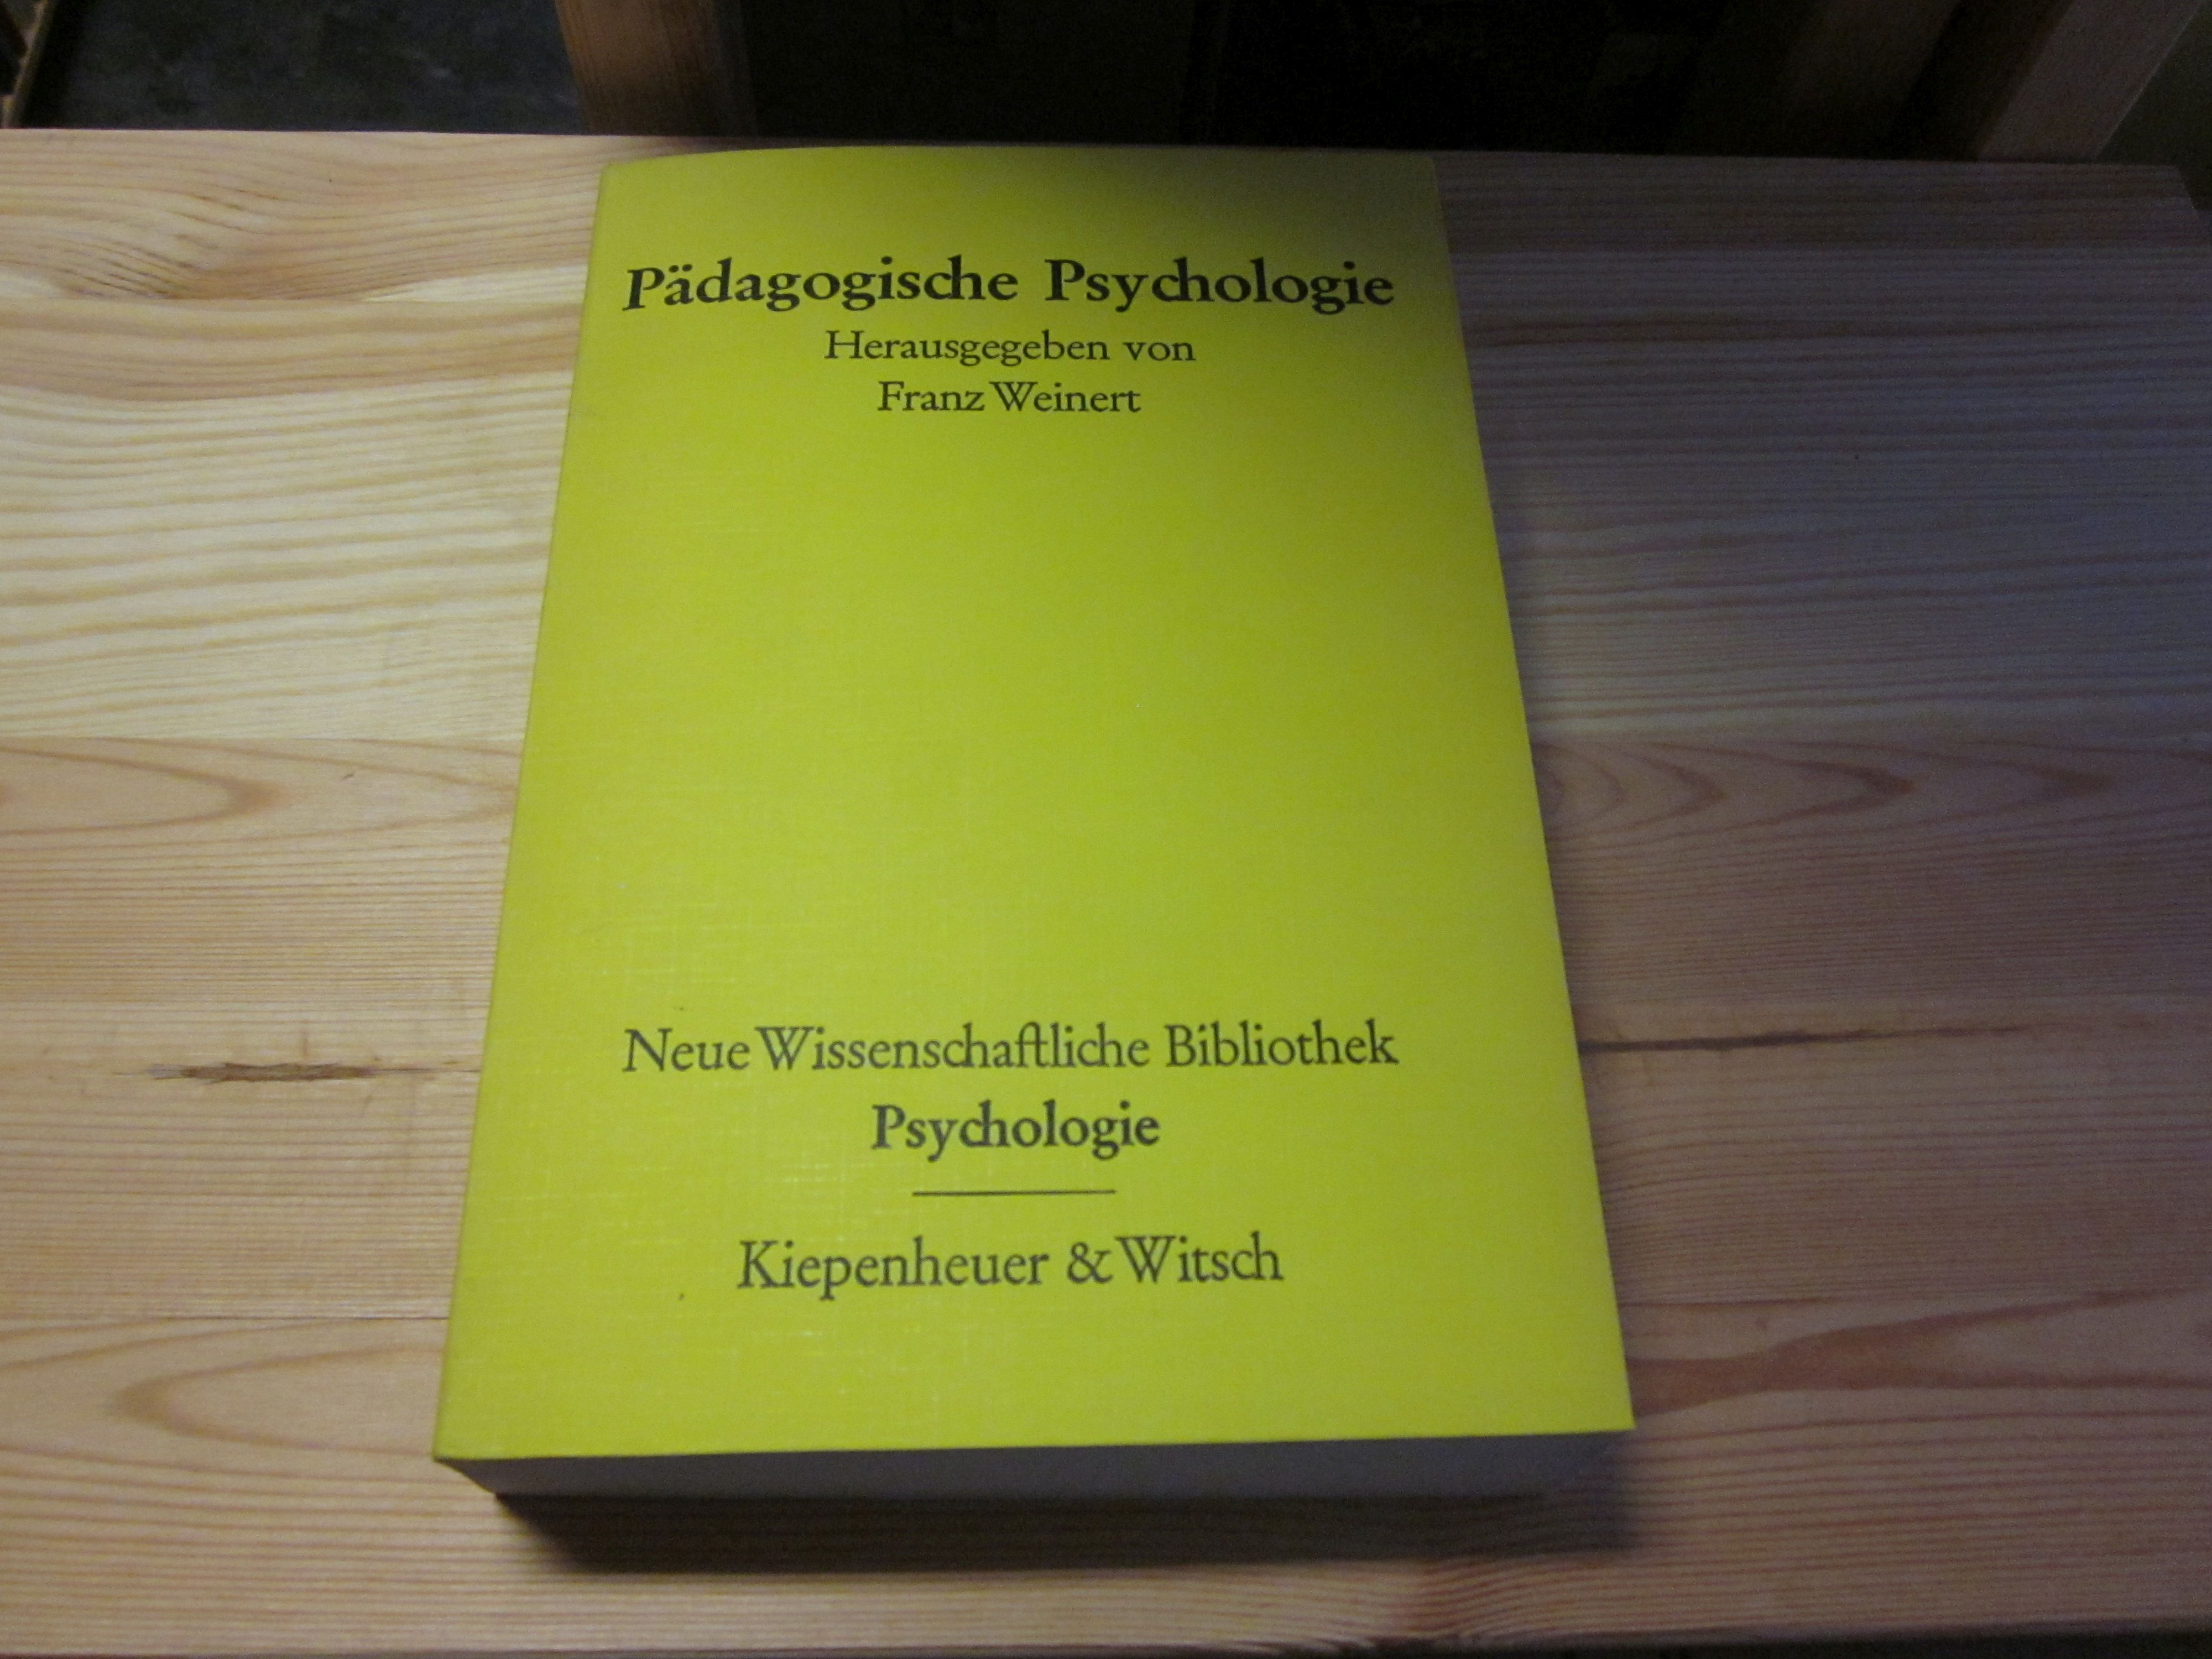 Pädagogische Psychologie - Weinert, Franz (Hg.)